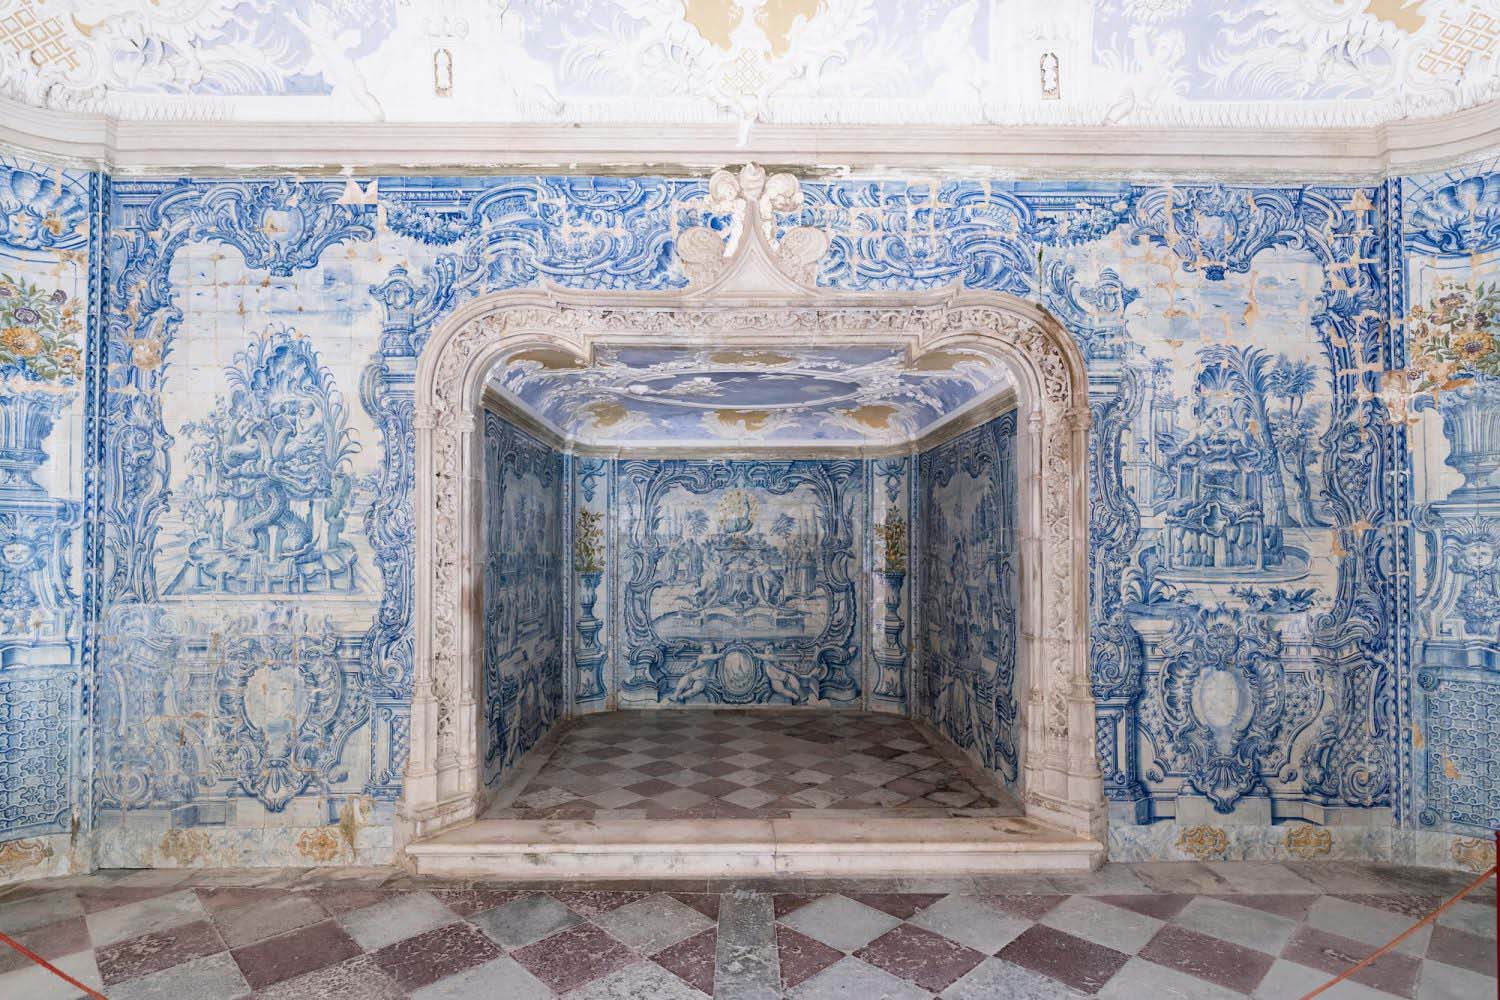 Nội thất của Cung điện Quốc gia Sintra (Ảnh: Sopotnicki / Shutterstock)